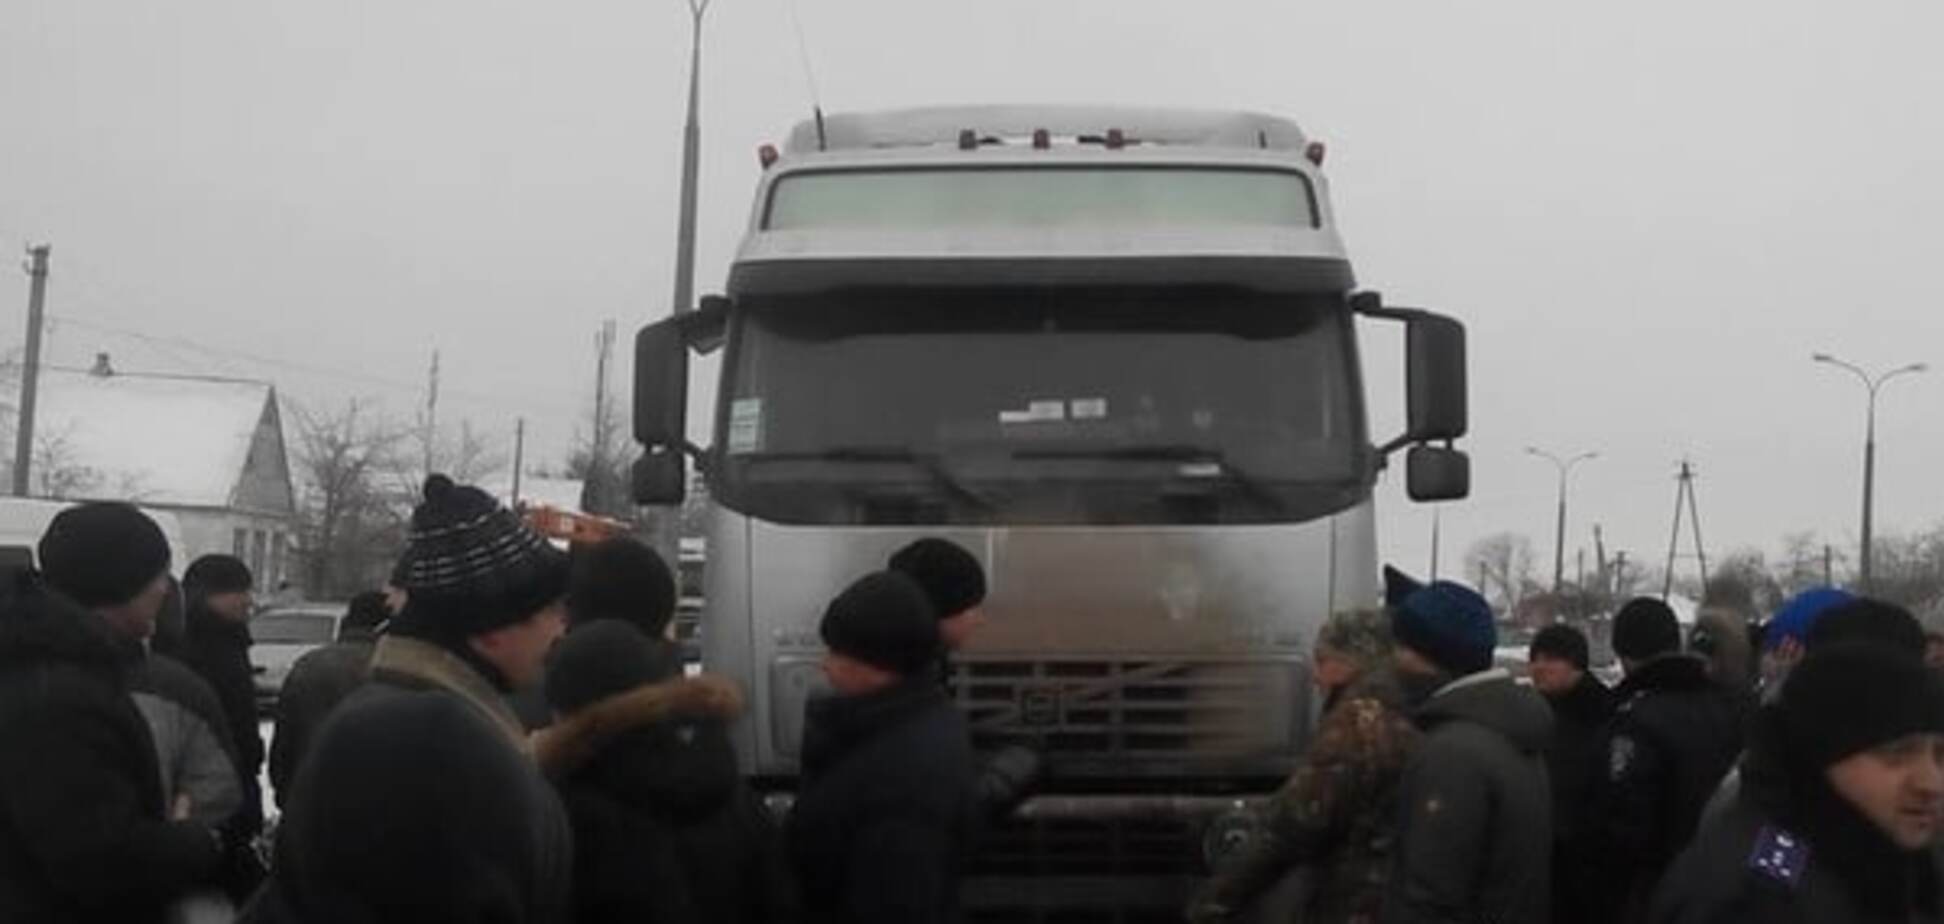 Бунт у Новомосковську: активісти перекрили трасу Дніпропетровськ-Донецьк через 'договорняки' у міськраді